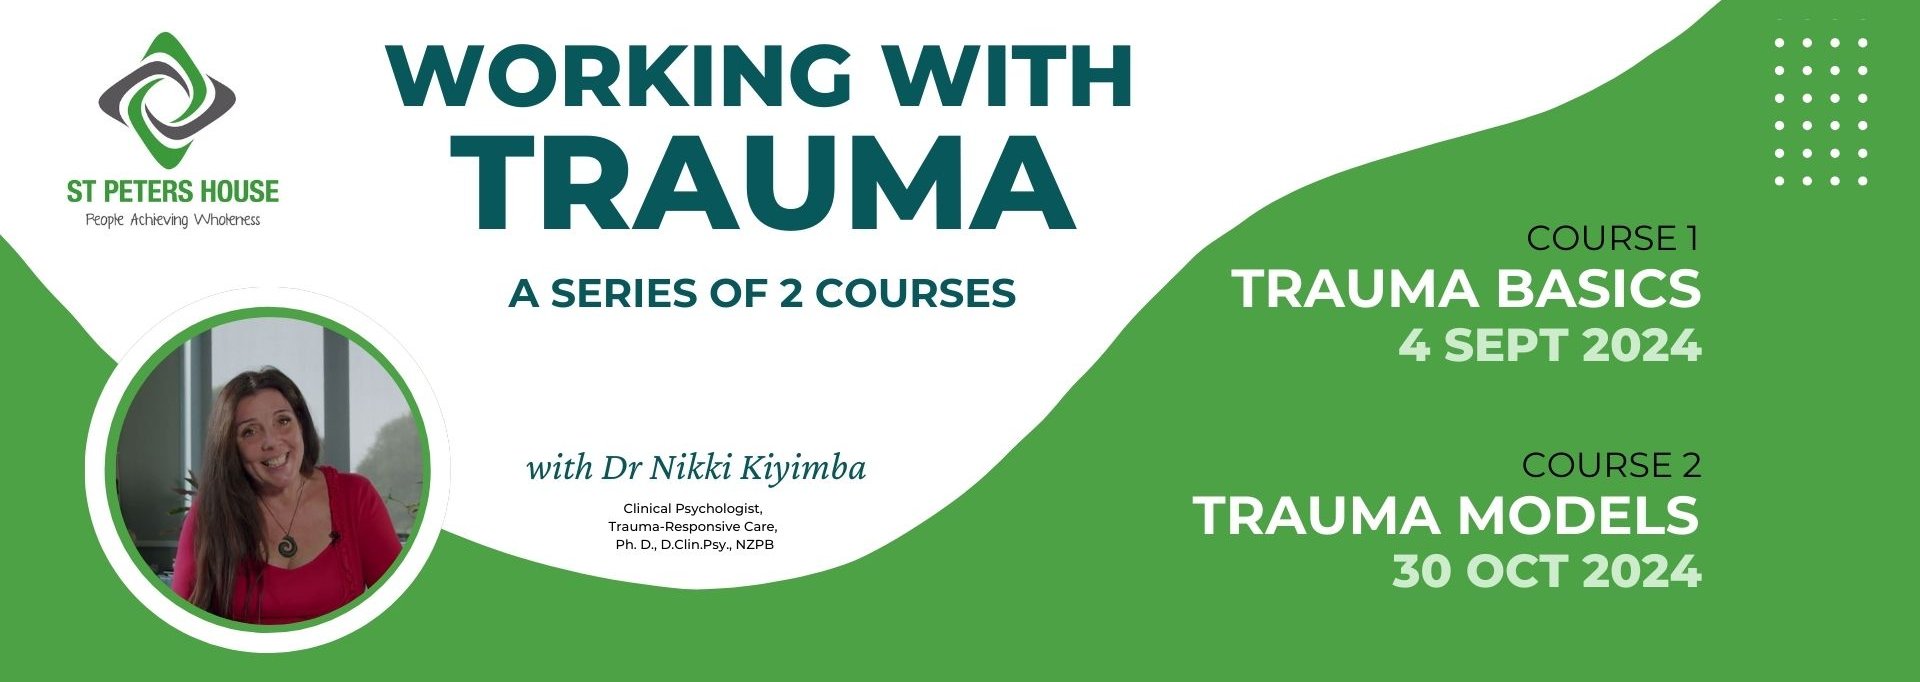 Working with Trauma